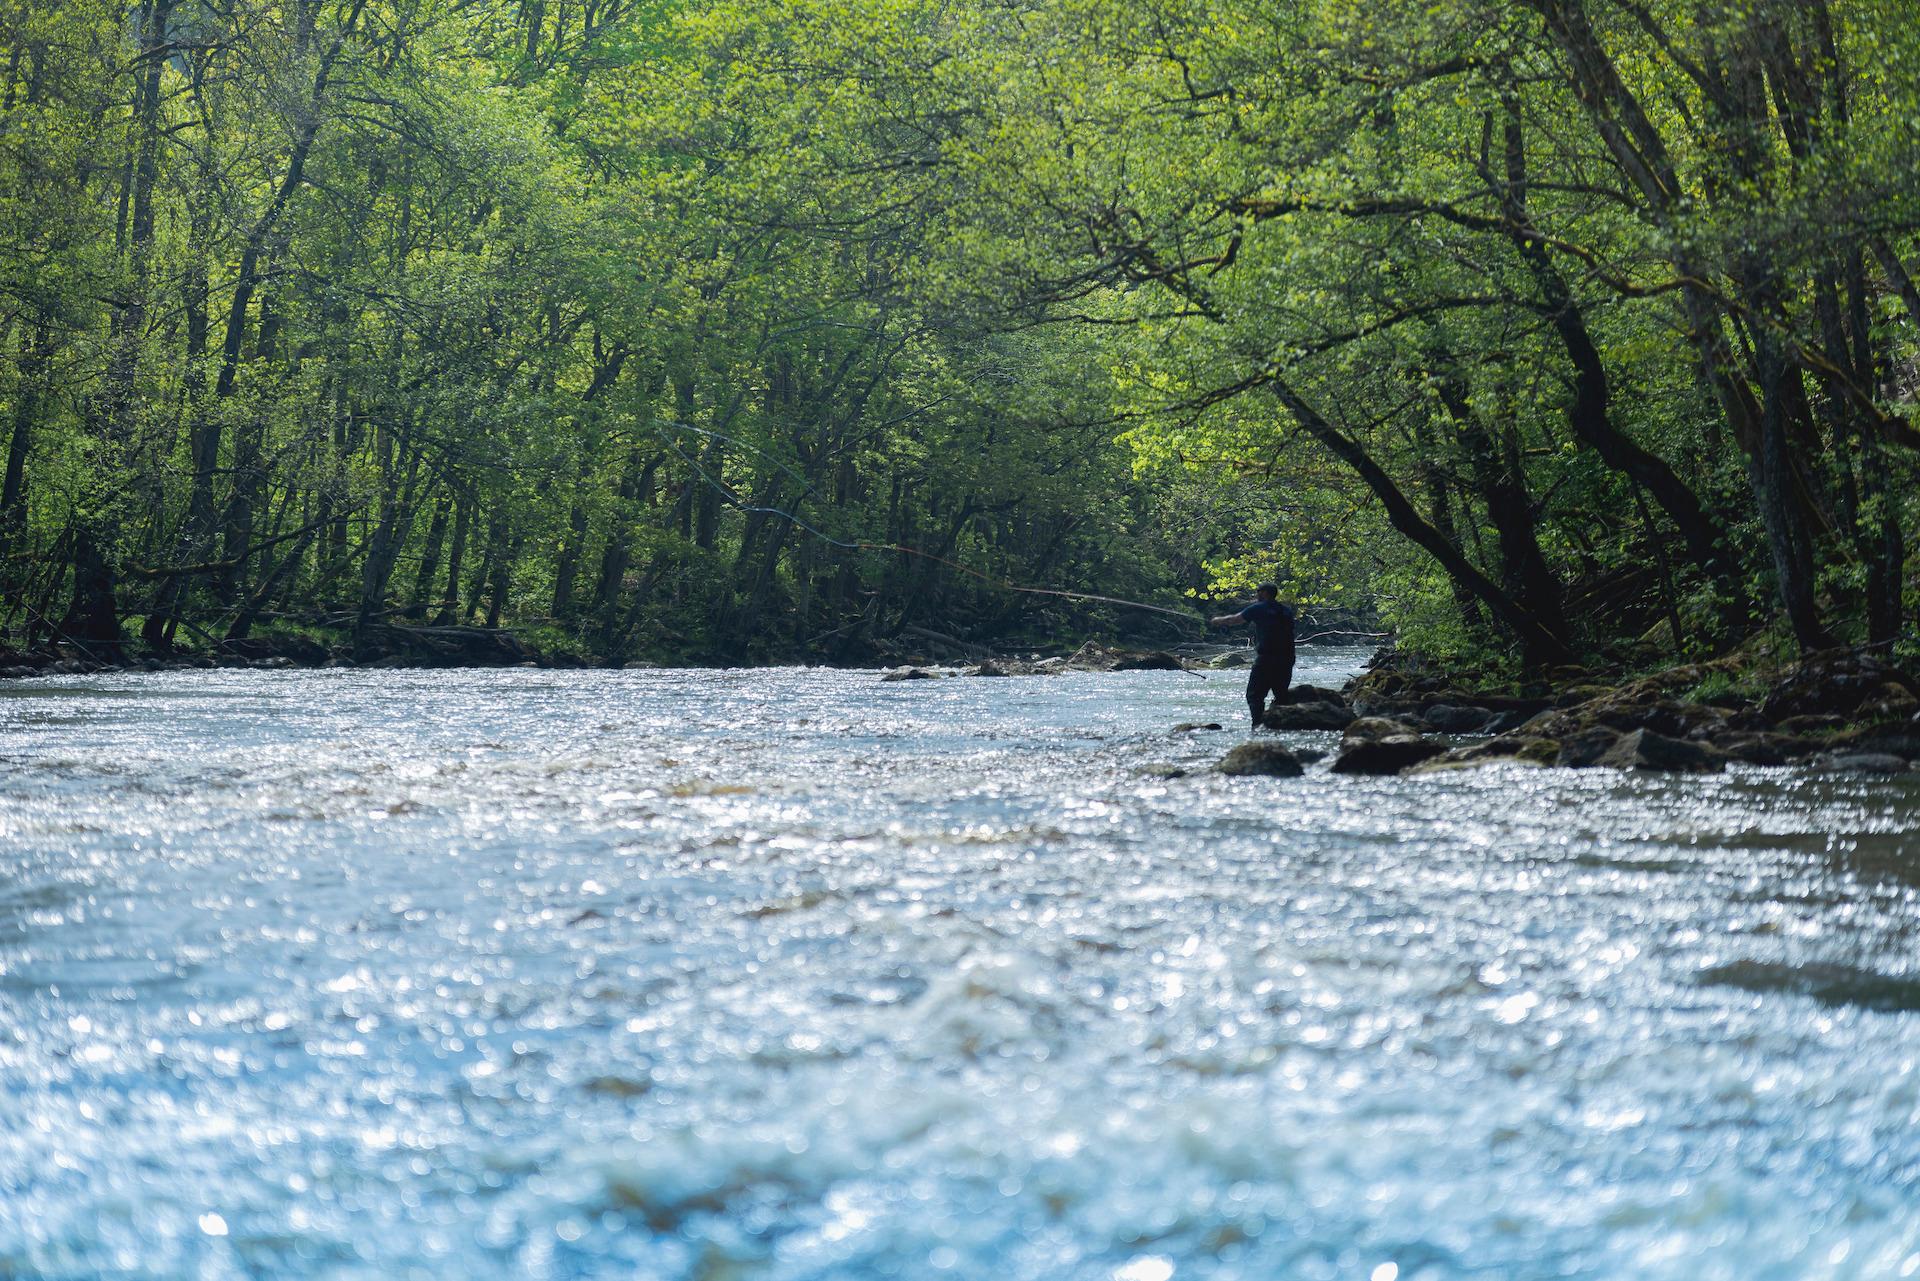 Une personne pêche à la mouche dans la rivière Örekil. La rivière est entourée de verdure.